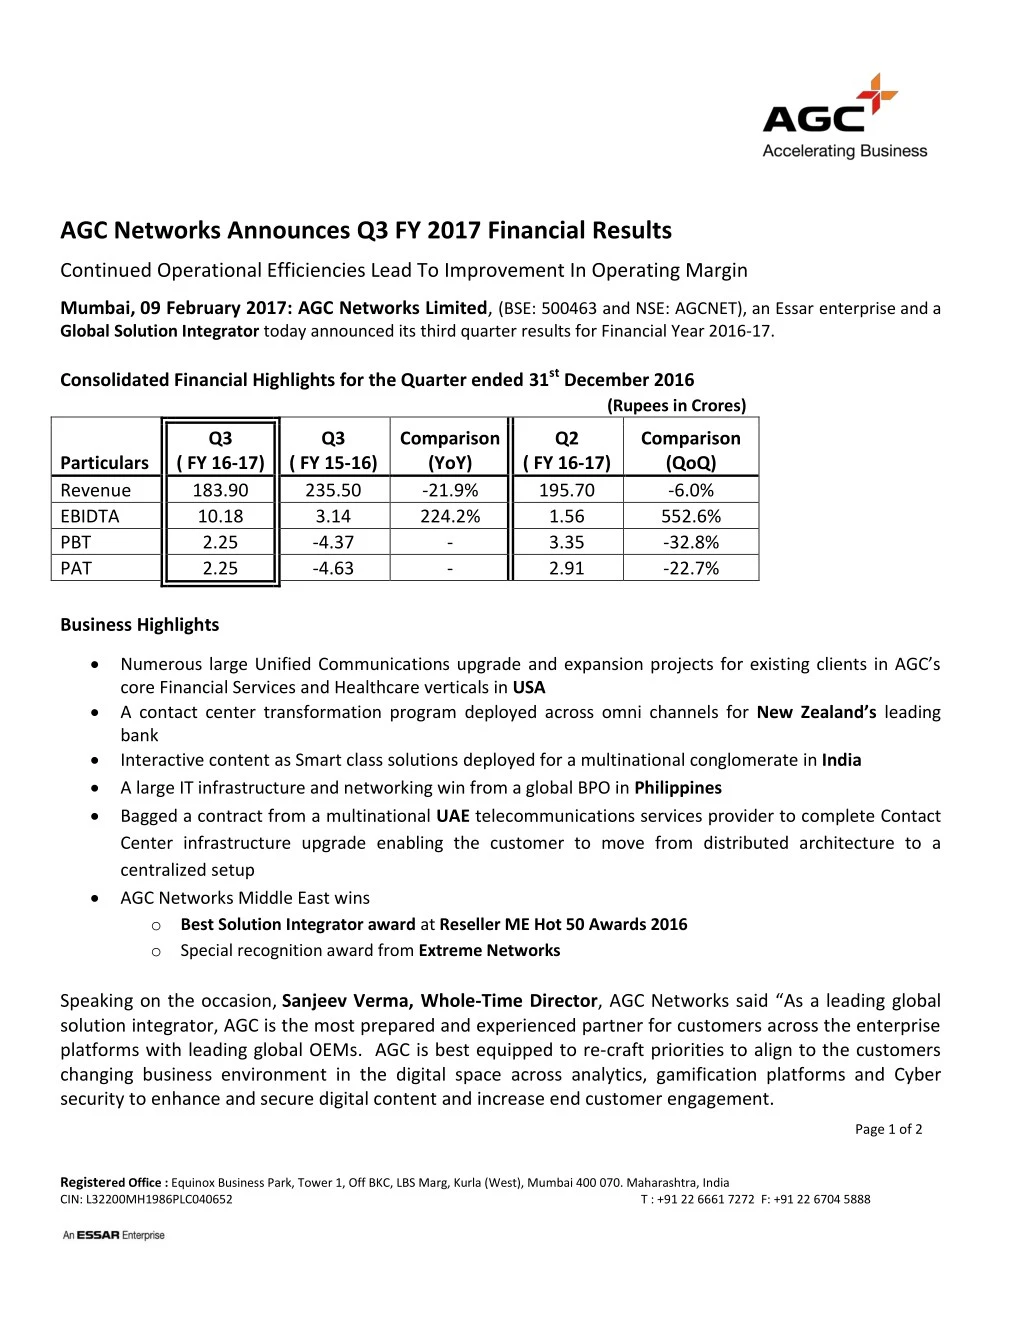 agc networks announces q3 fy 2017 financial